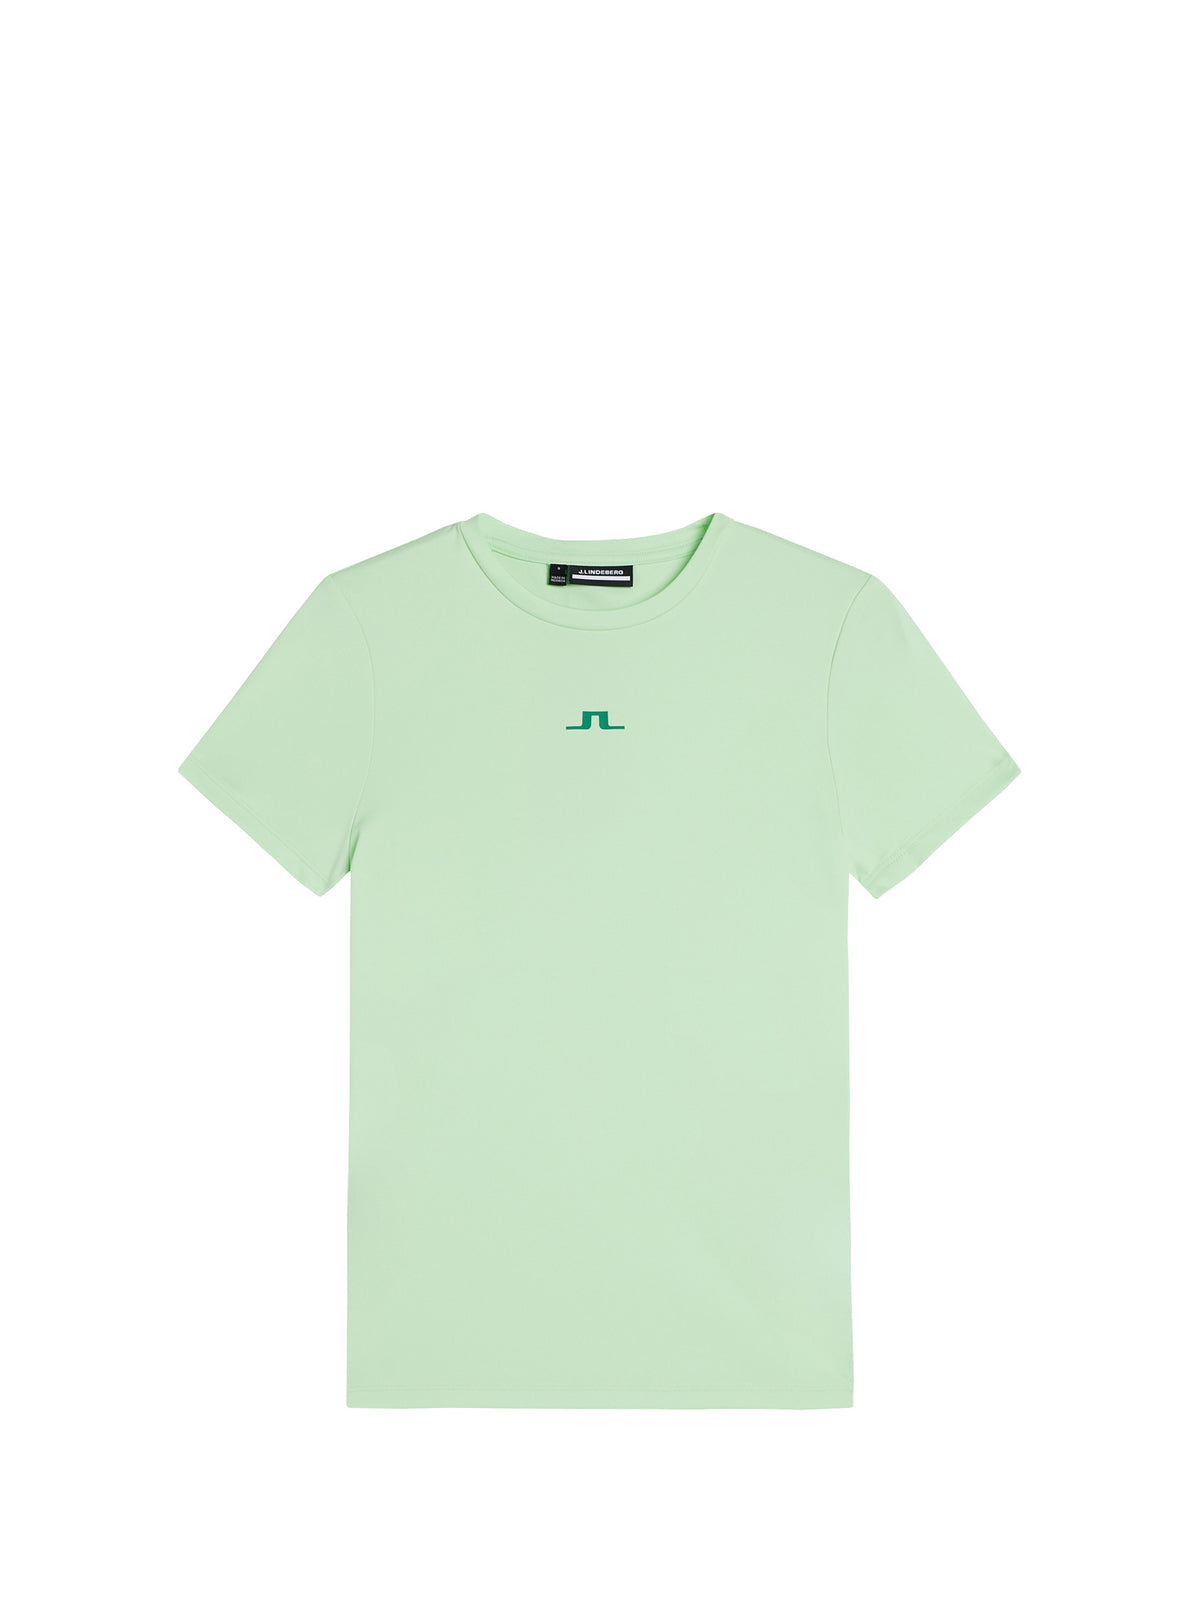 Ada T-shirt / Patina Green